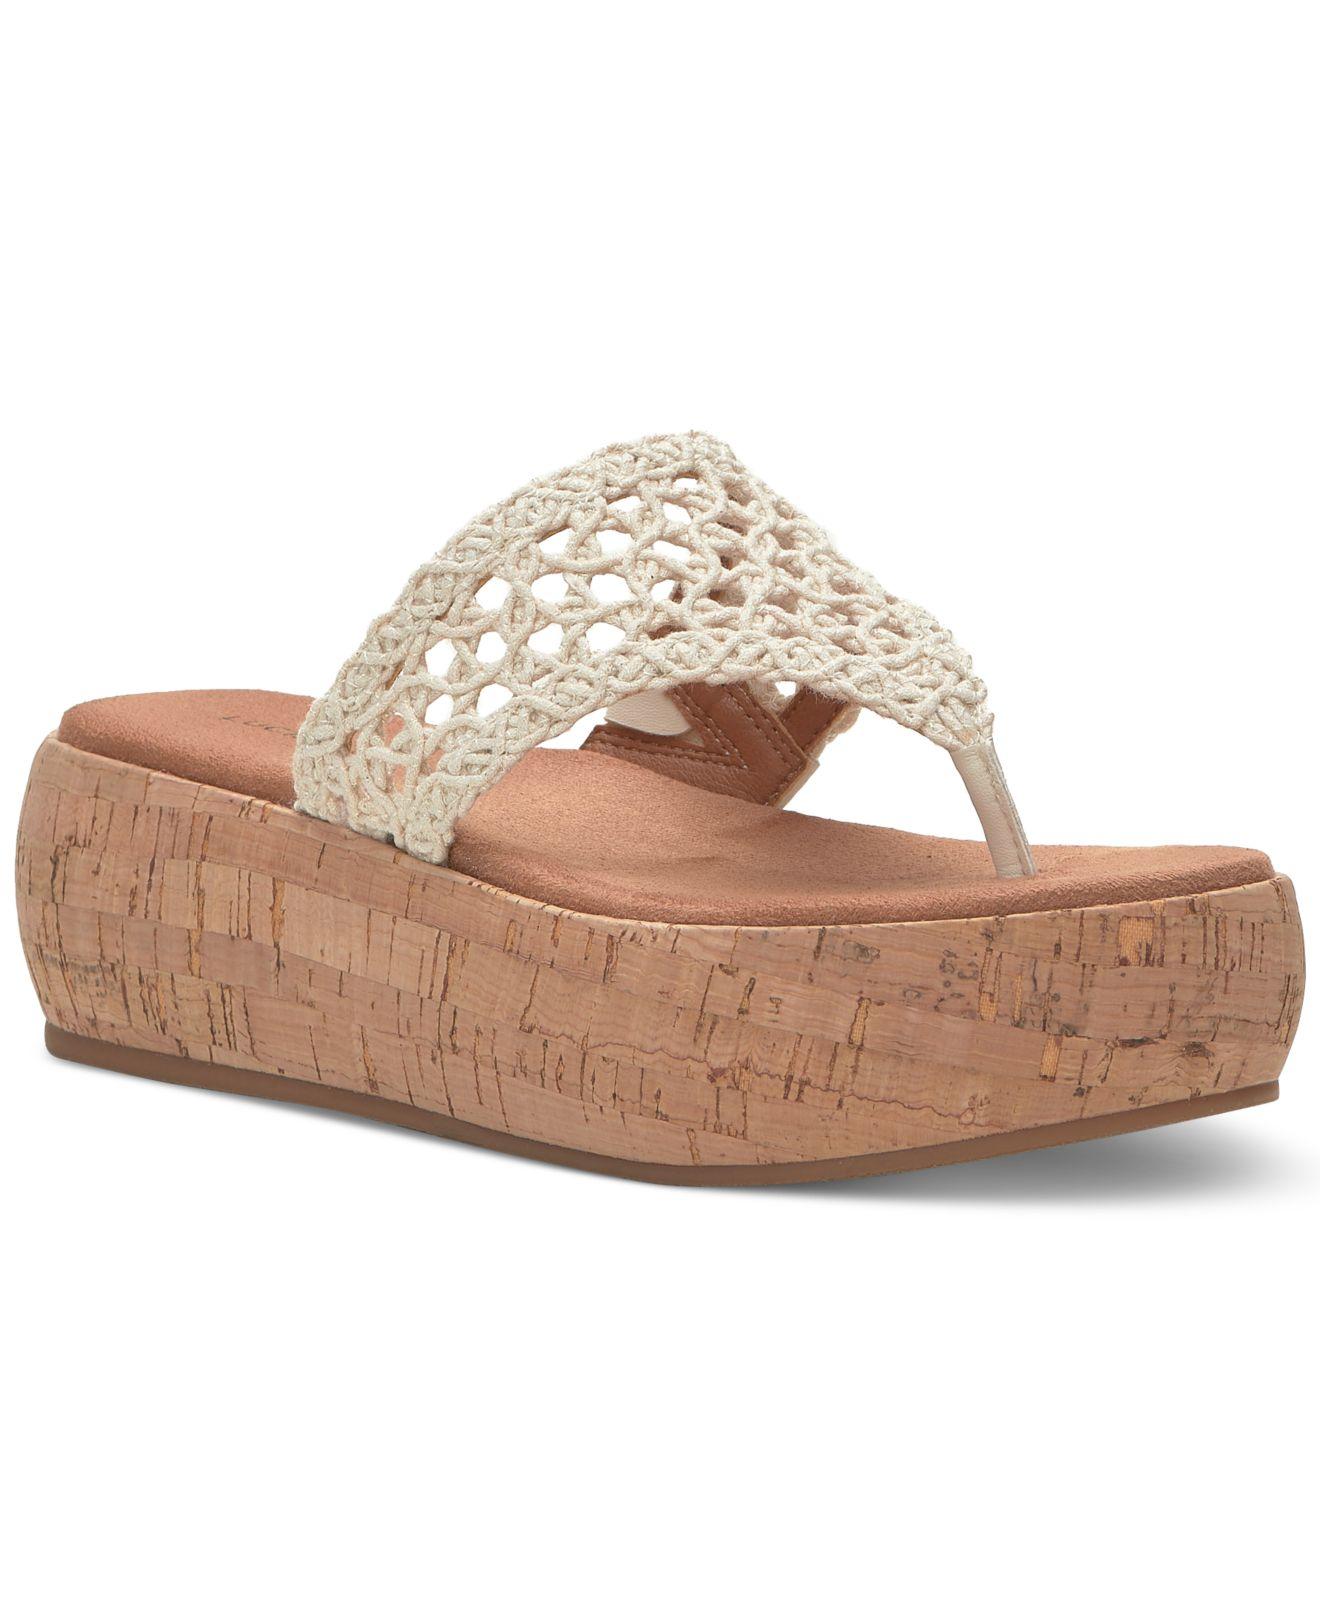 Lucky Brand Jaslene Crochet Platform Sandals in White | Lyst